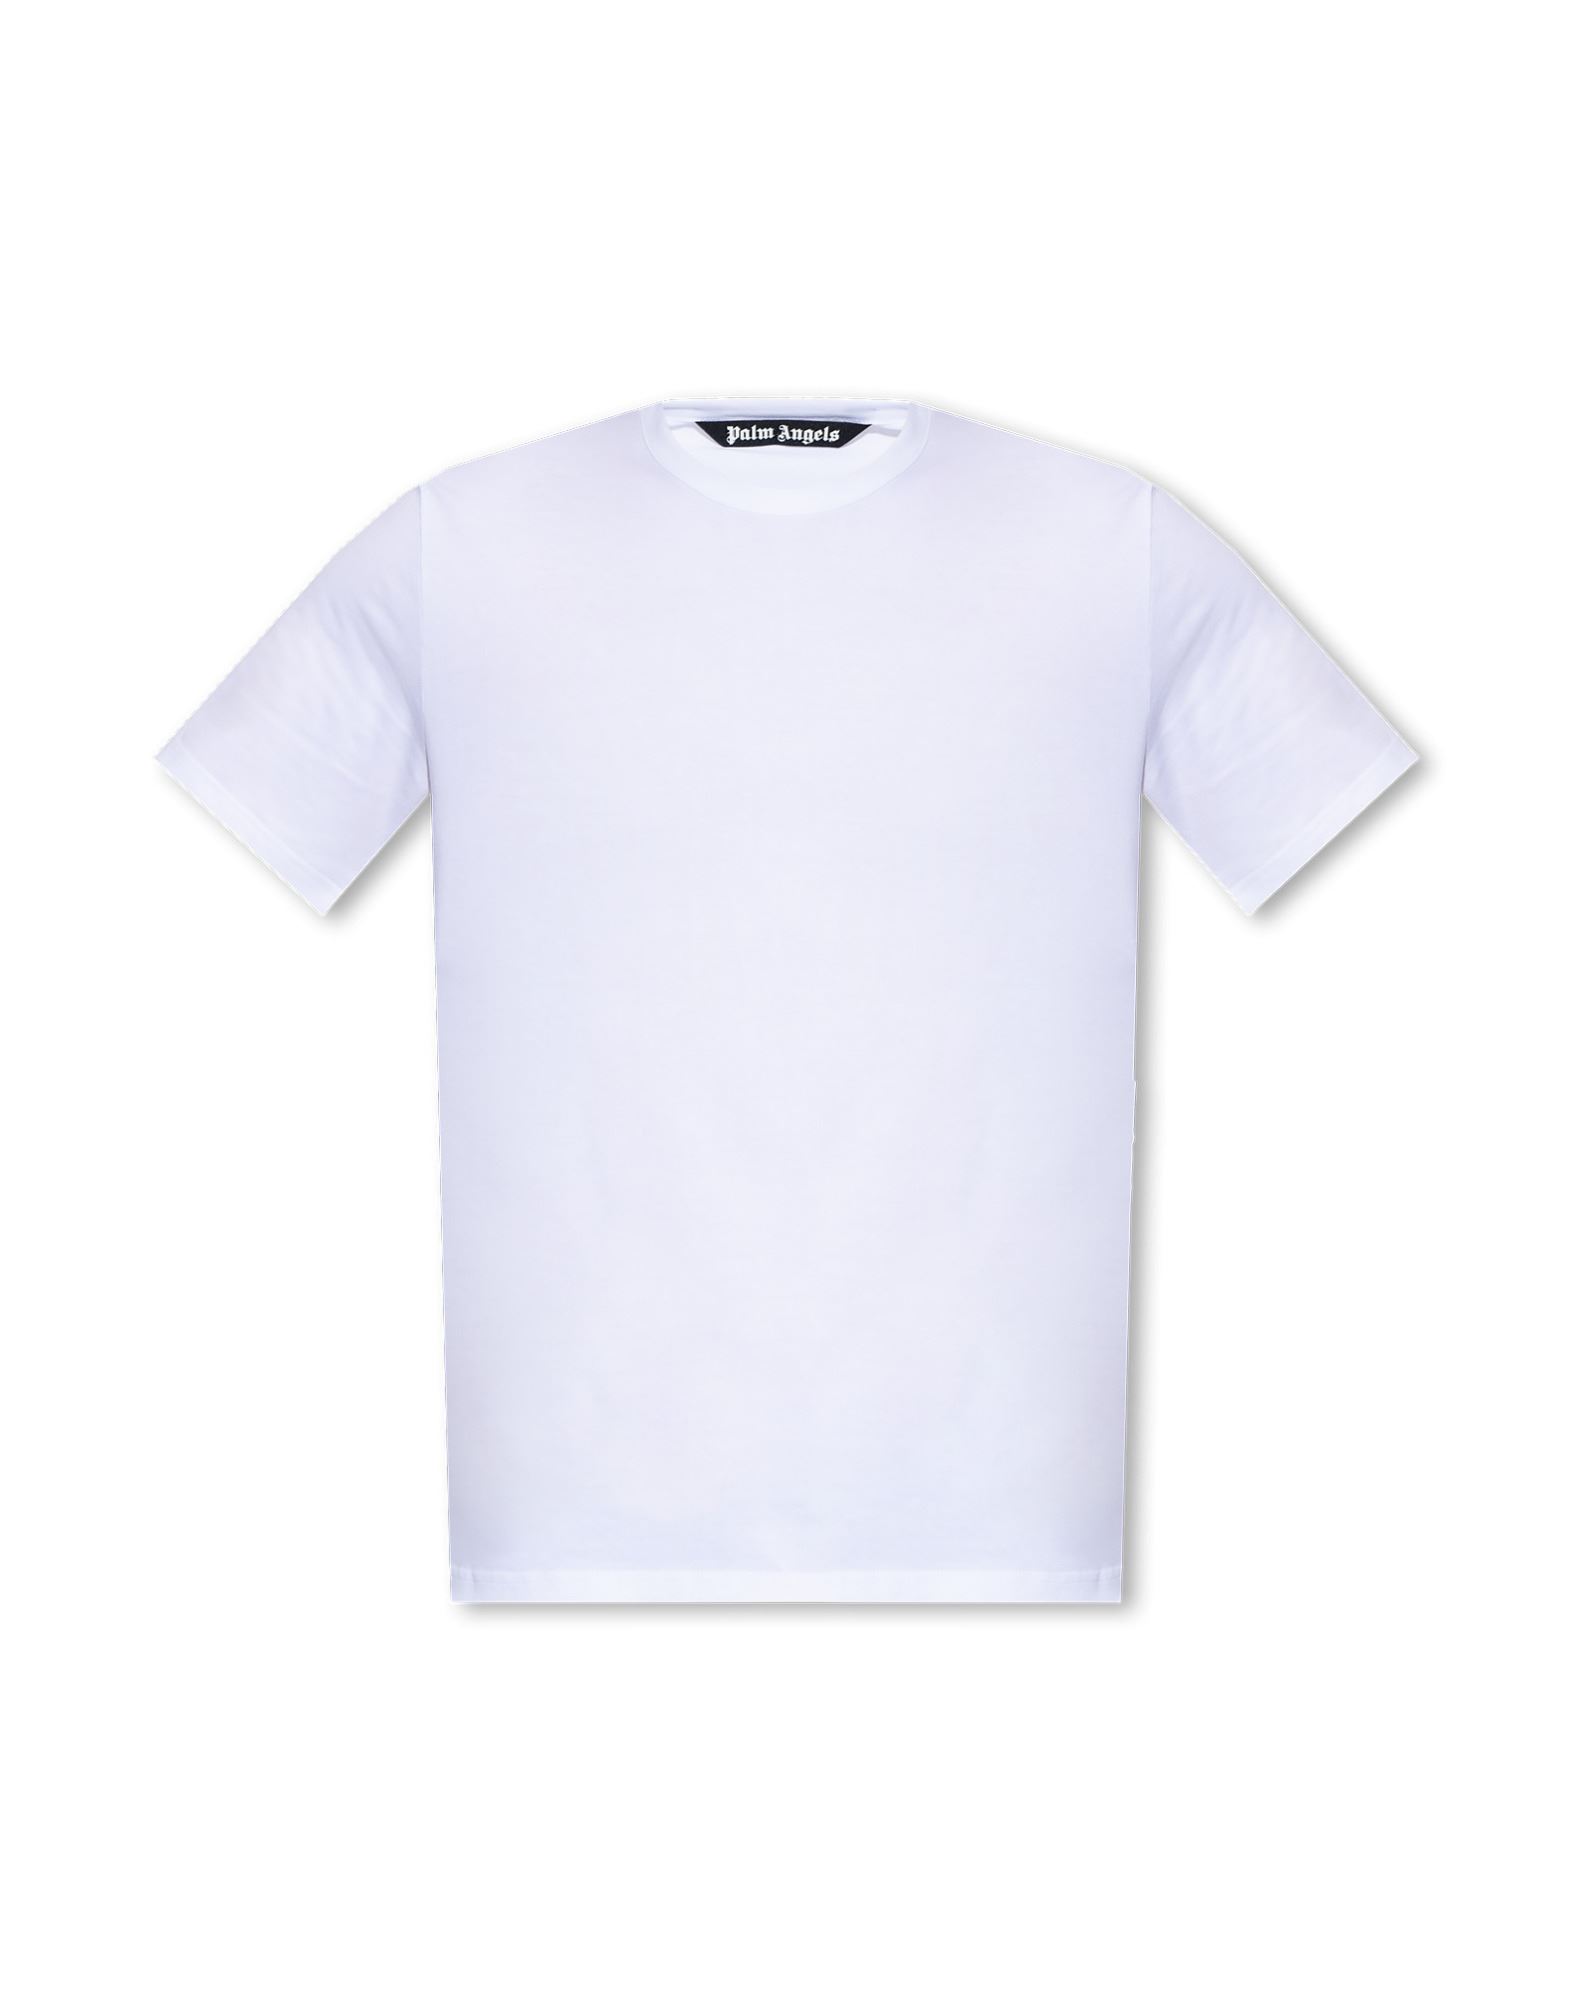 PALM ANGELS T-shirts Herren Weiß von PALM ANGELS